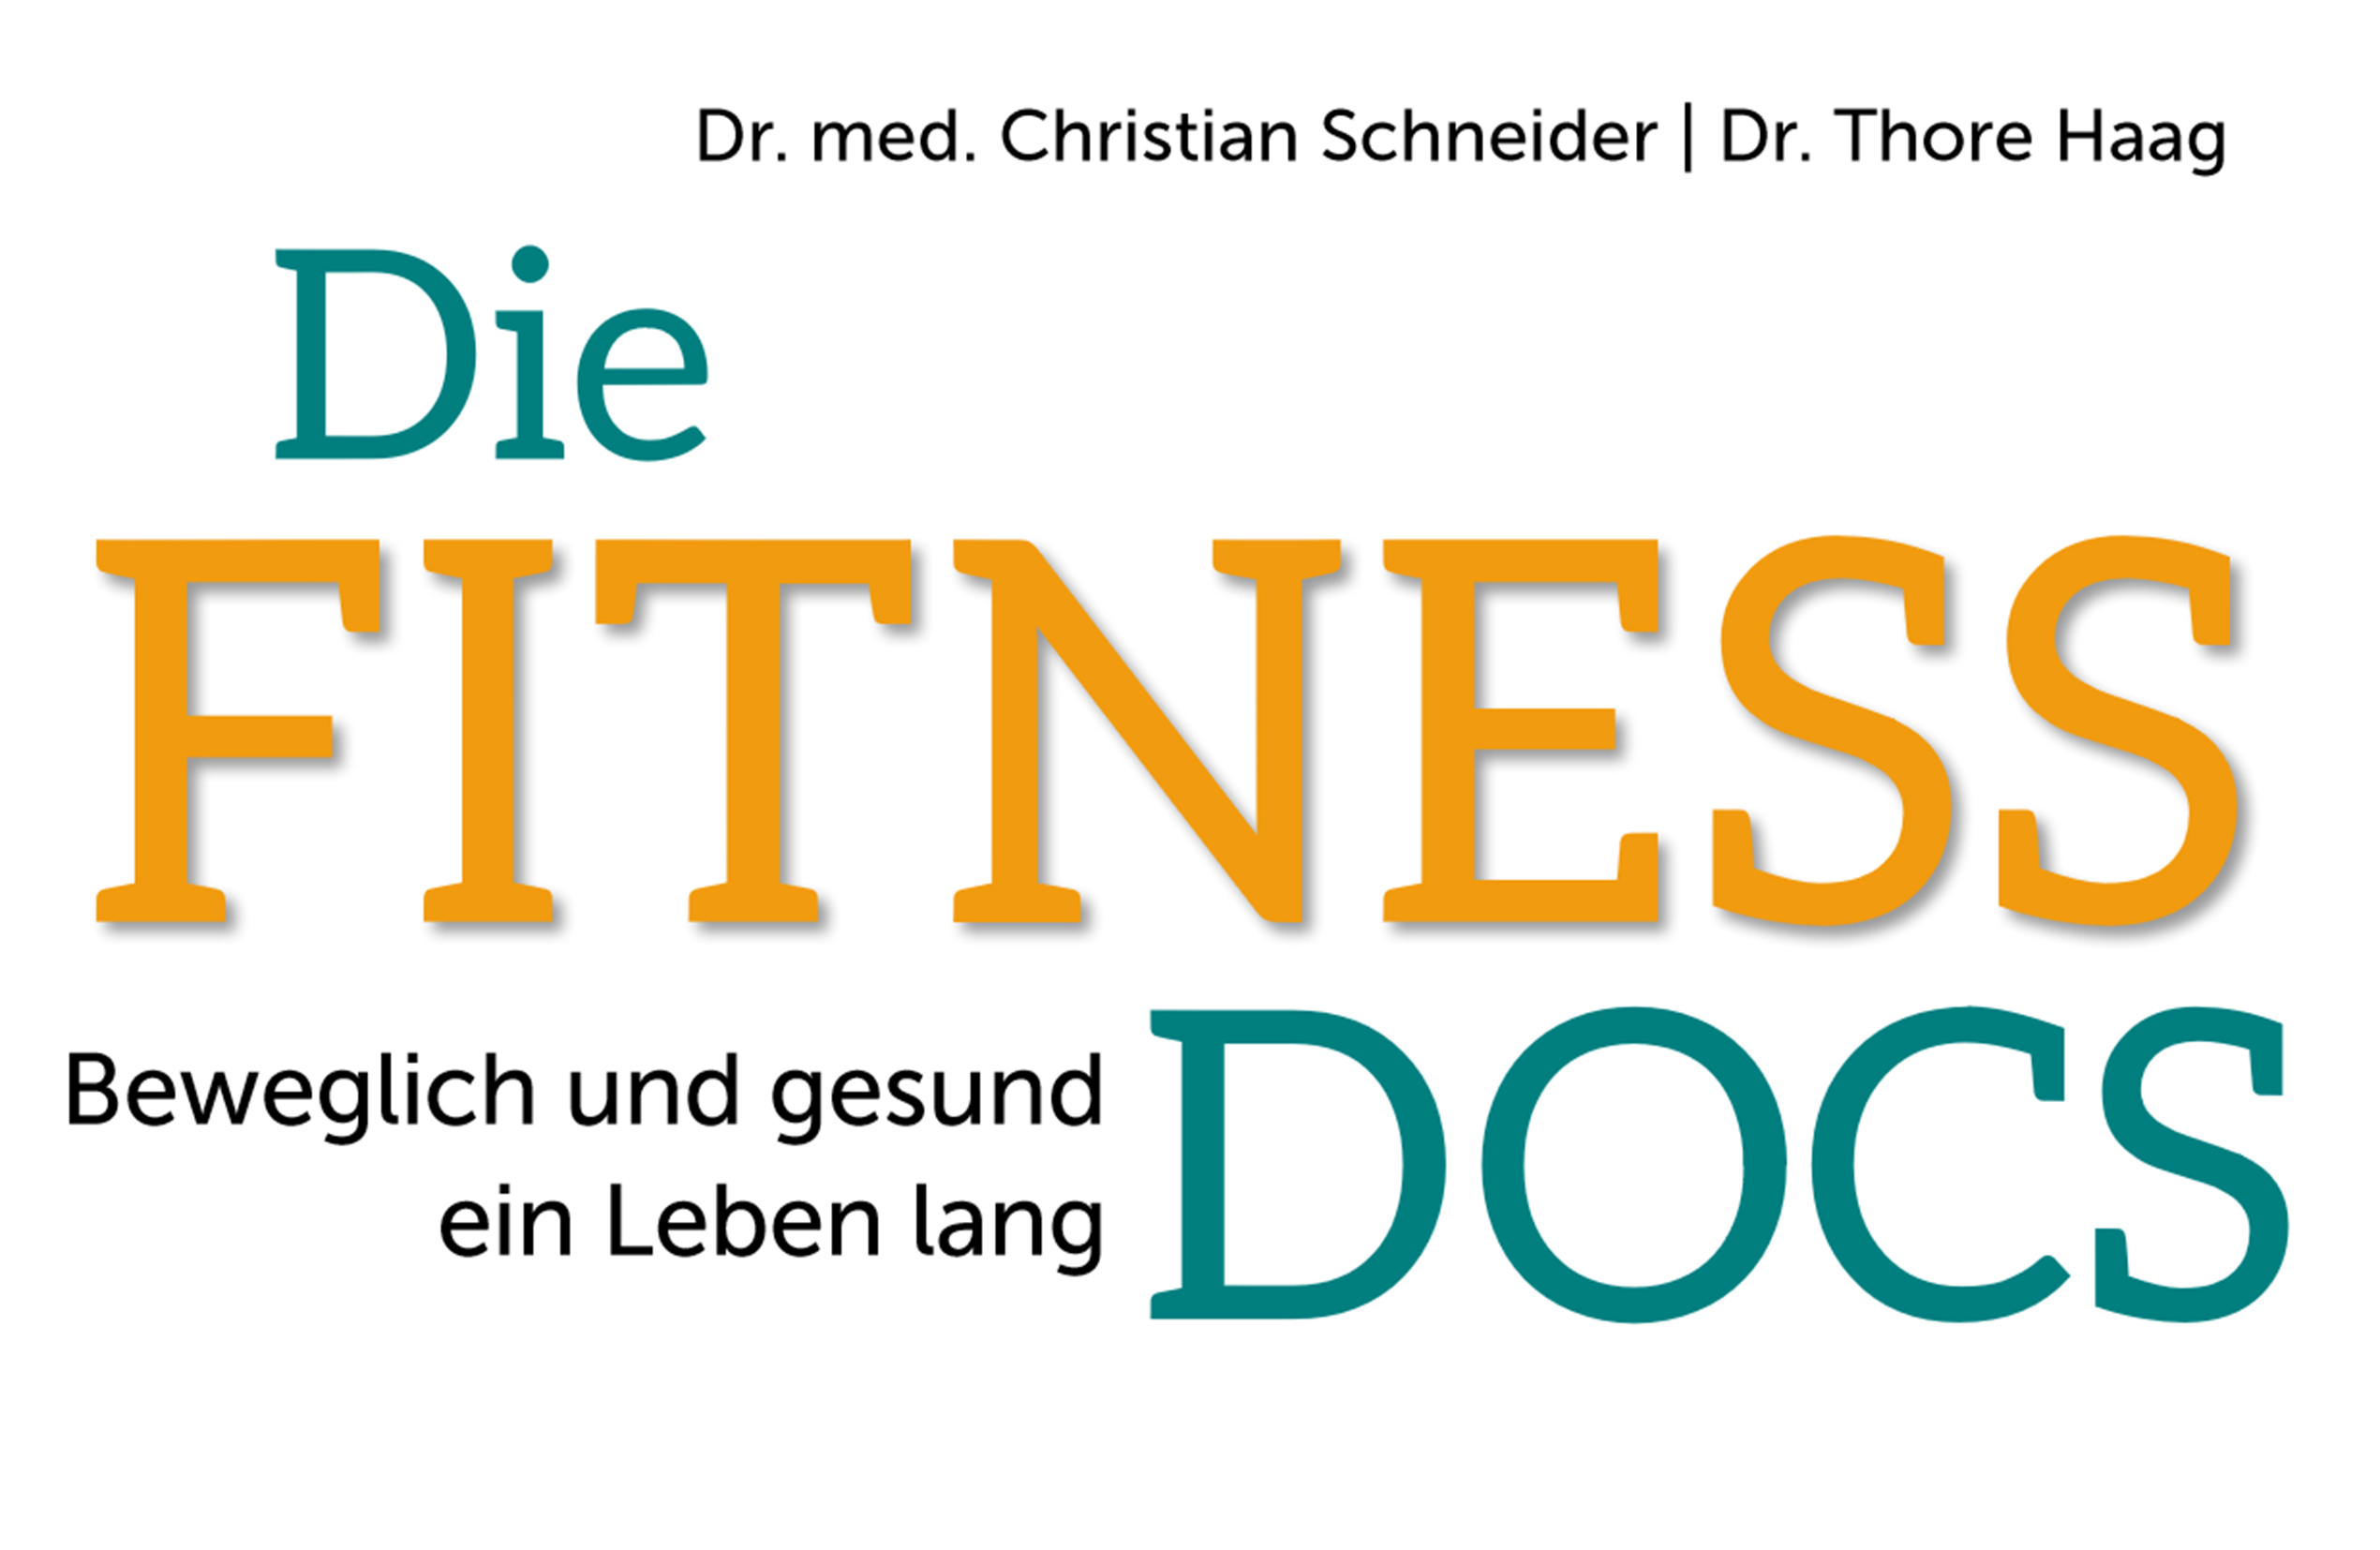 Fitness Docs, Buch, riva Verlag, Beweglich und gesund ein Leben lang, Dr. med Christian Schneider, Dr. Thore Haag